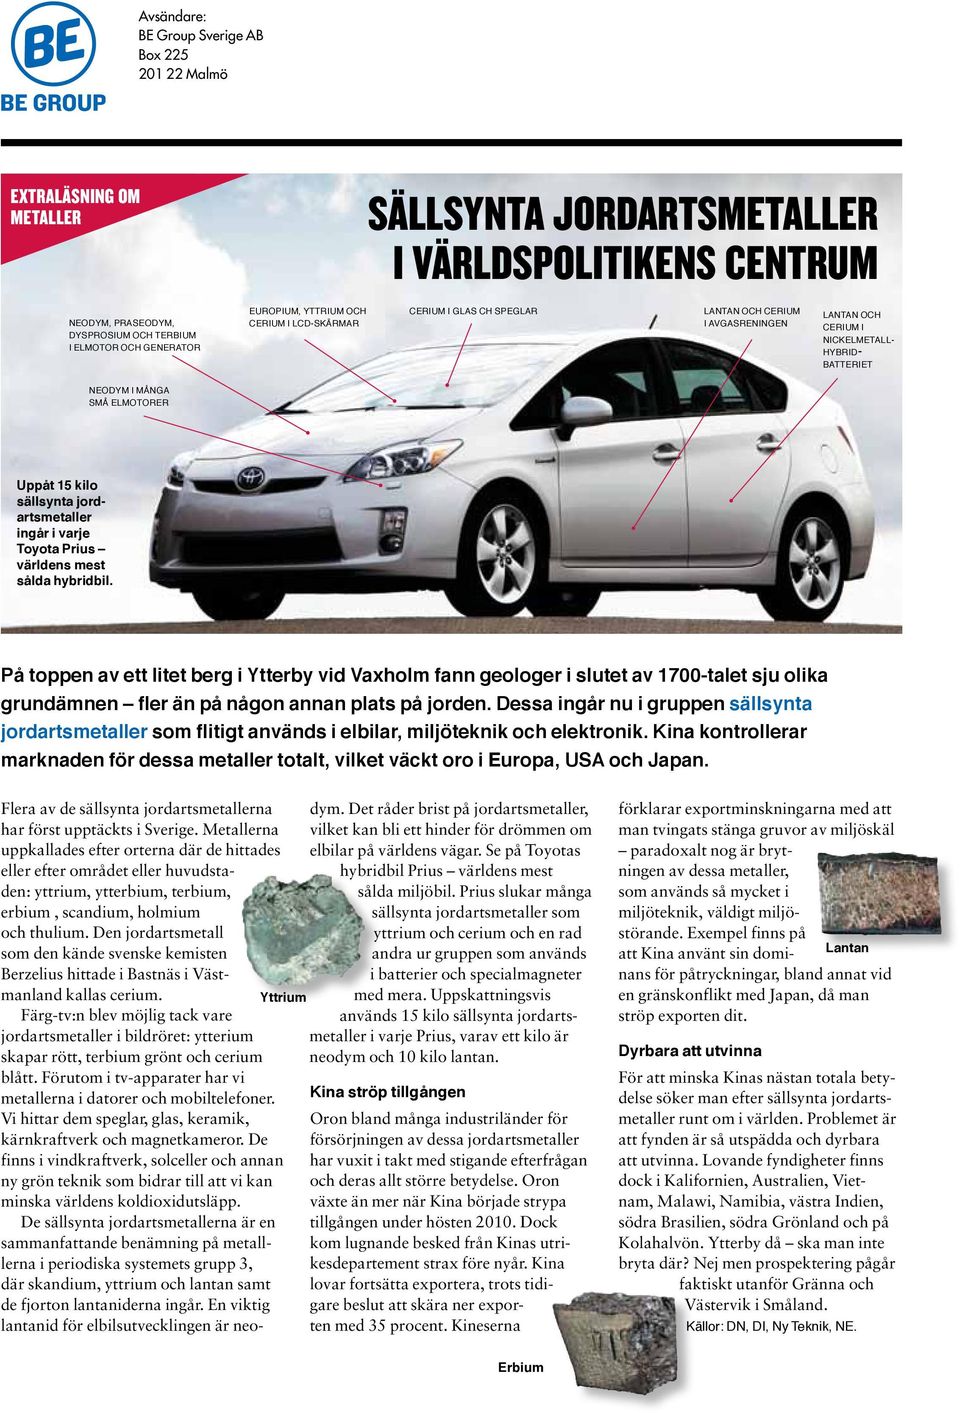 sällsynta jordartsmetaller ingår i varje Toyota Prius världens mest sålda hybridbil.